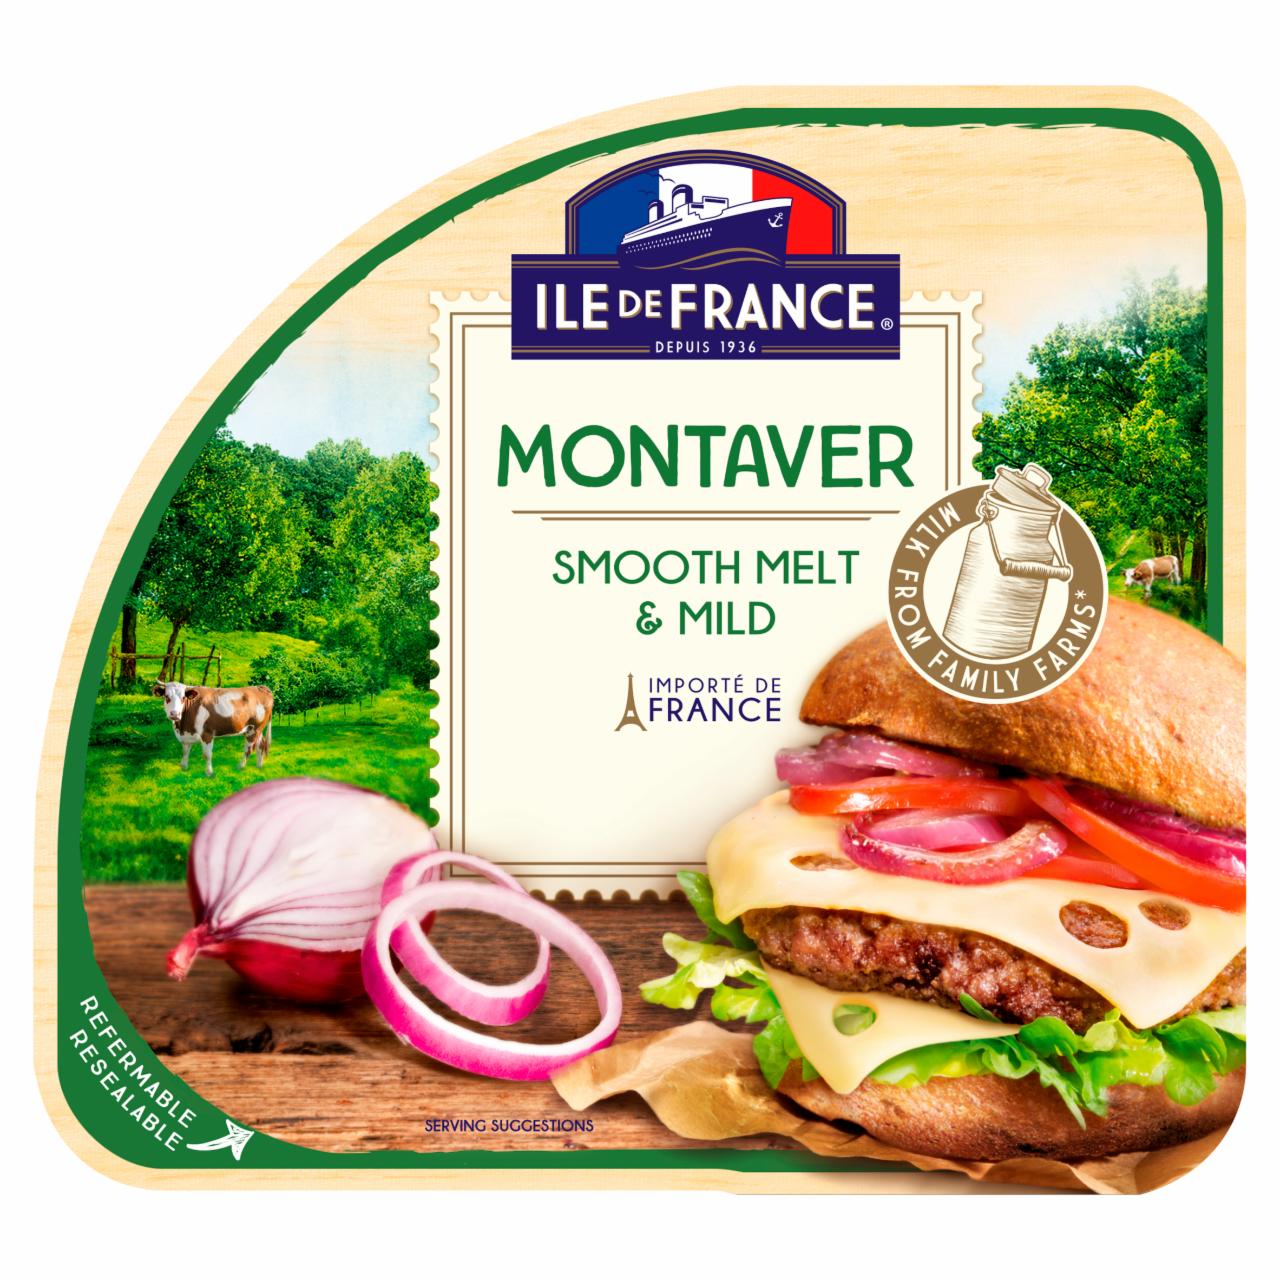 Képek - Ile de France Montaver szeletelt zsíros félkemény sajt 100 g